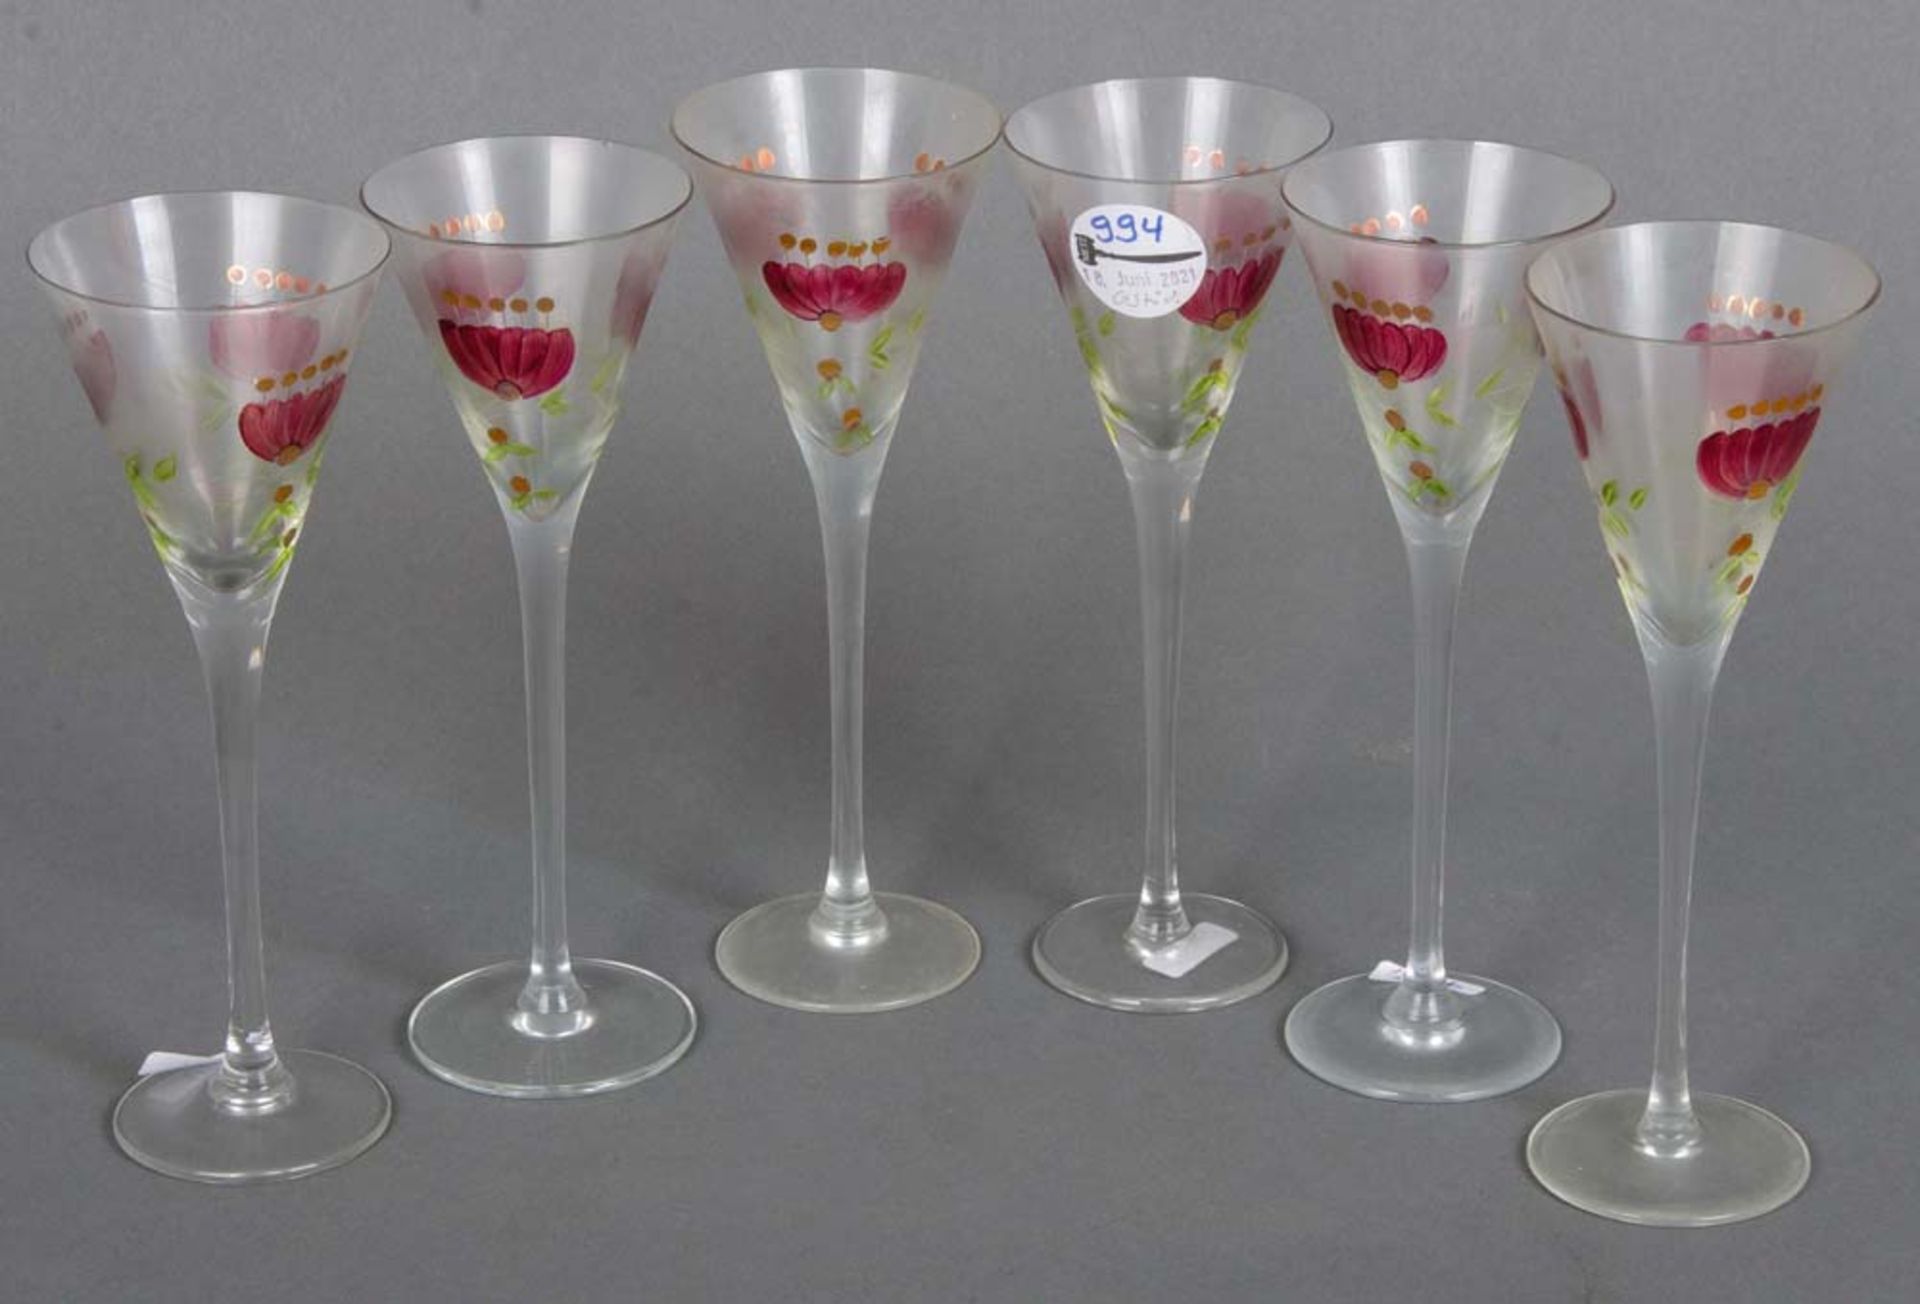 Sechs Jugendstil-Gläser. Theresienthal um 1900. Farbloses Glas, floral geschnitten und farbig kalt